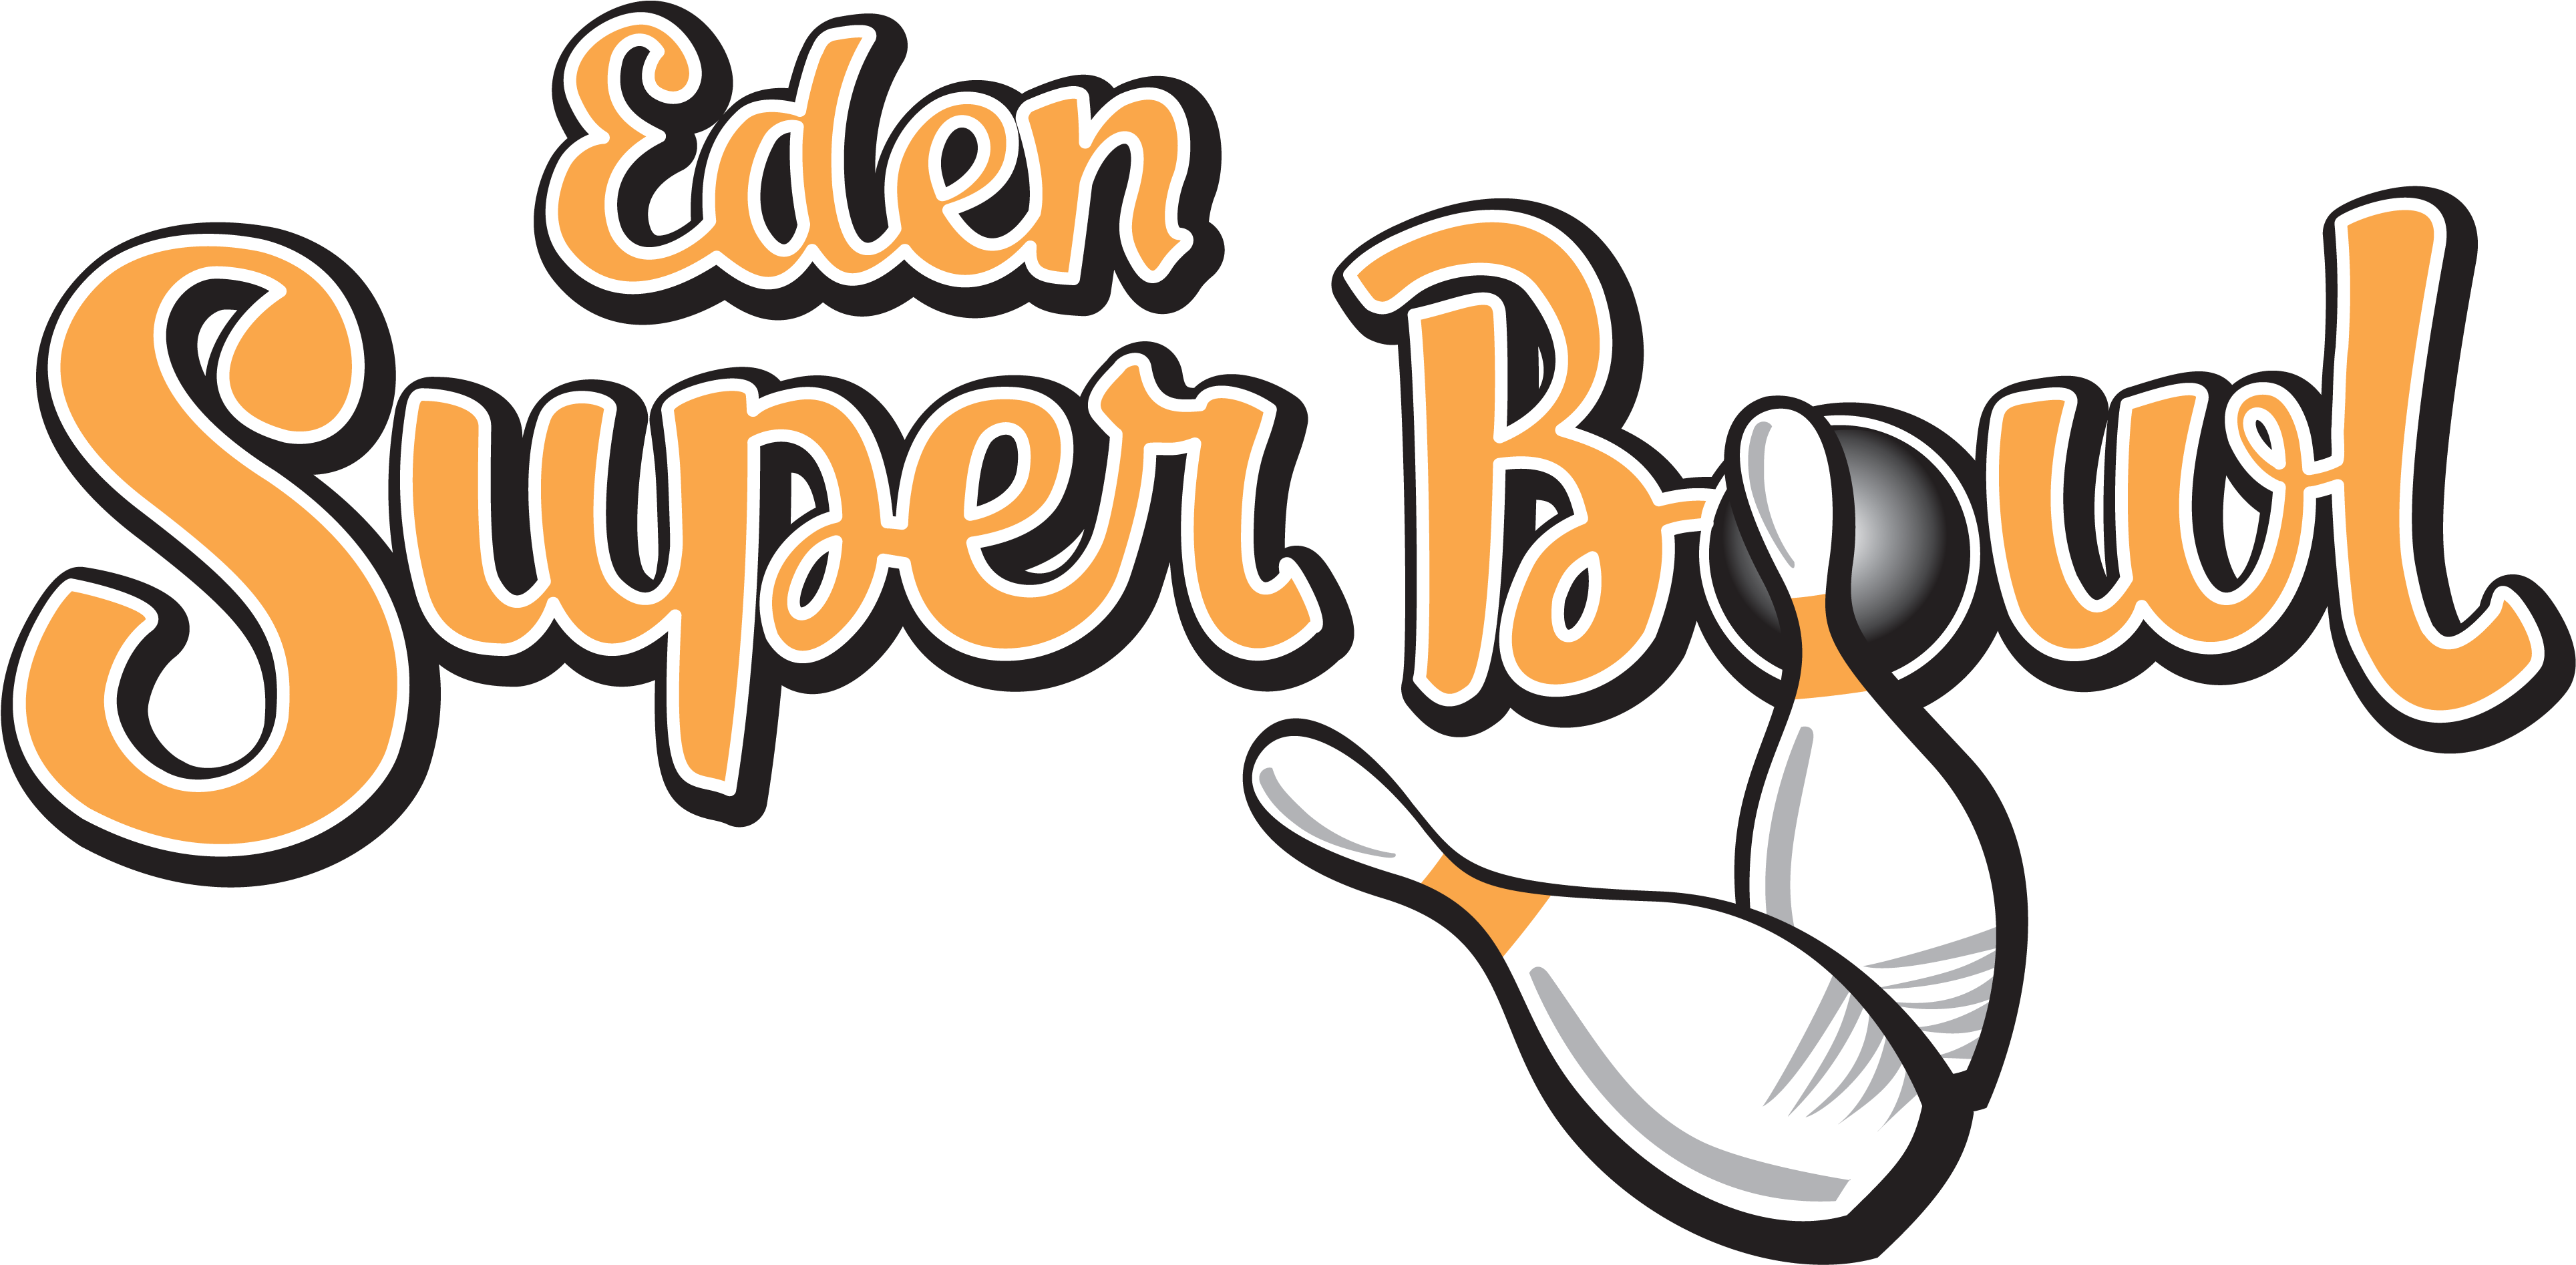 Superbowl-logo - Eden Super Bowl (3908x1919), Png Download